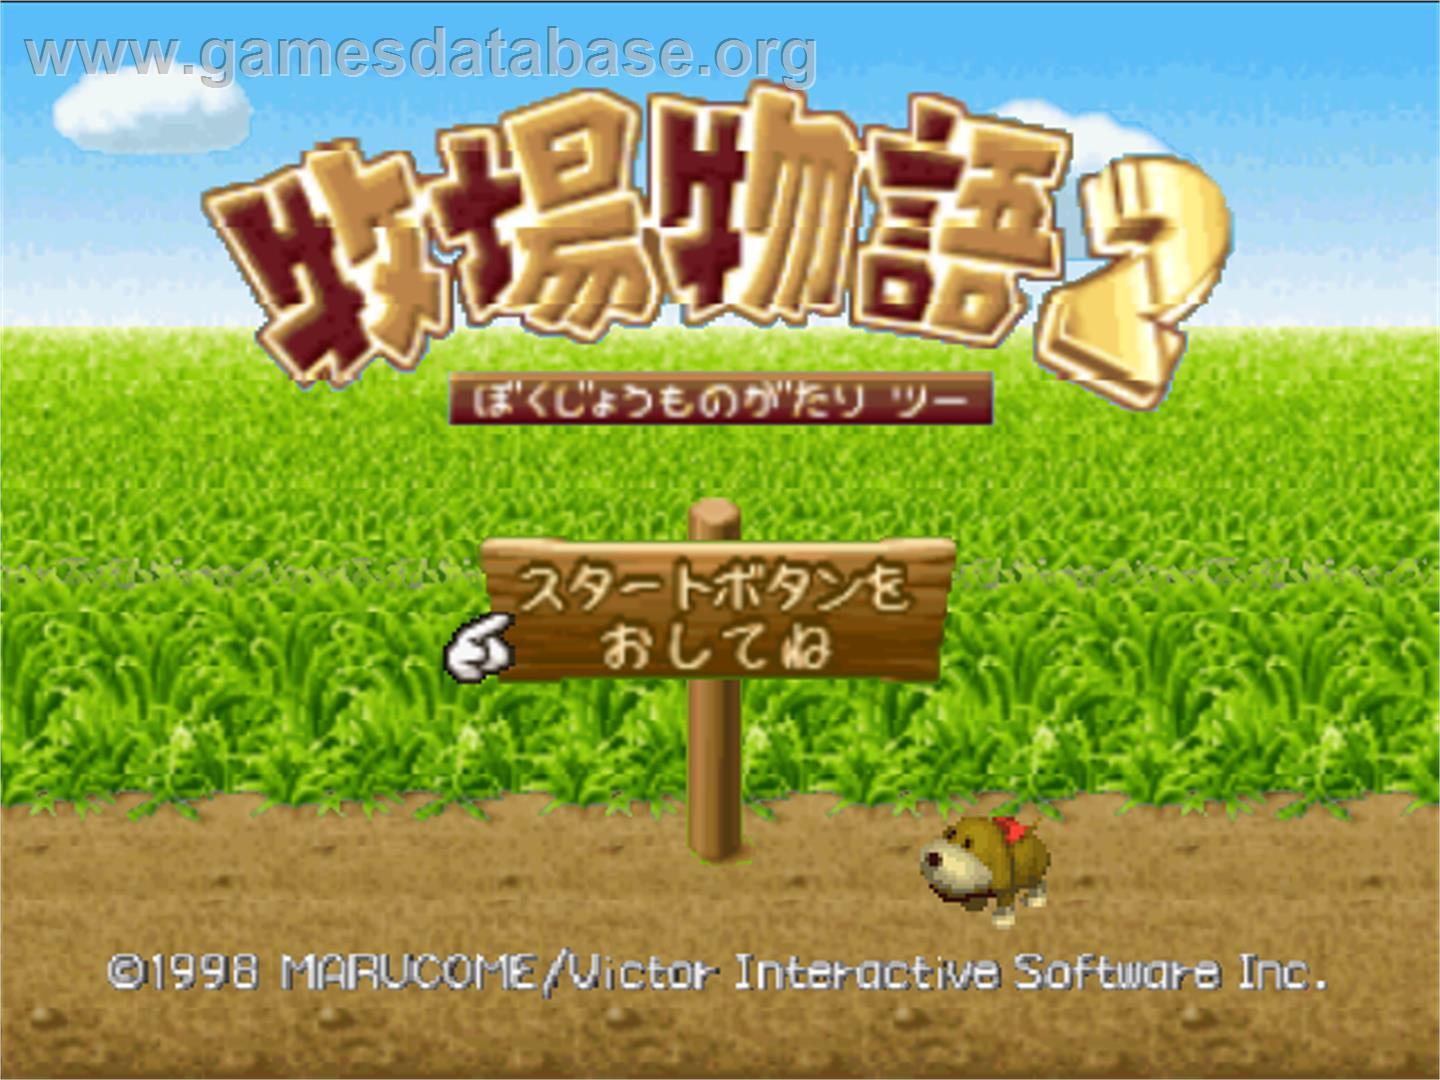 Bokujou Monogatari 2 - Nintendo N64 - Artwork - Title Screen